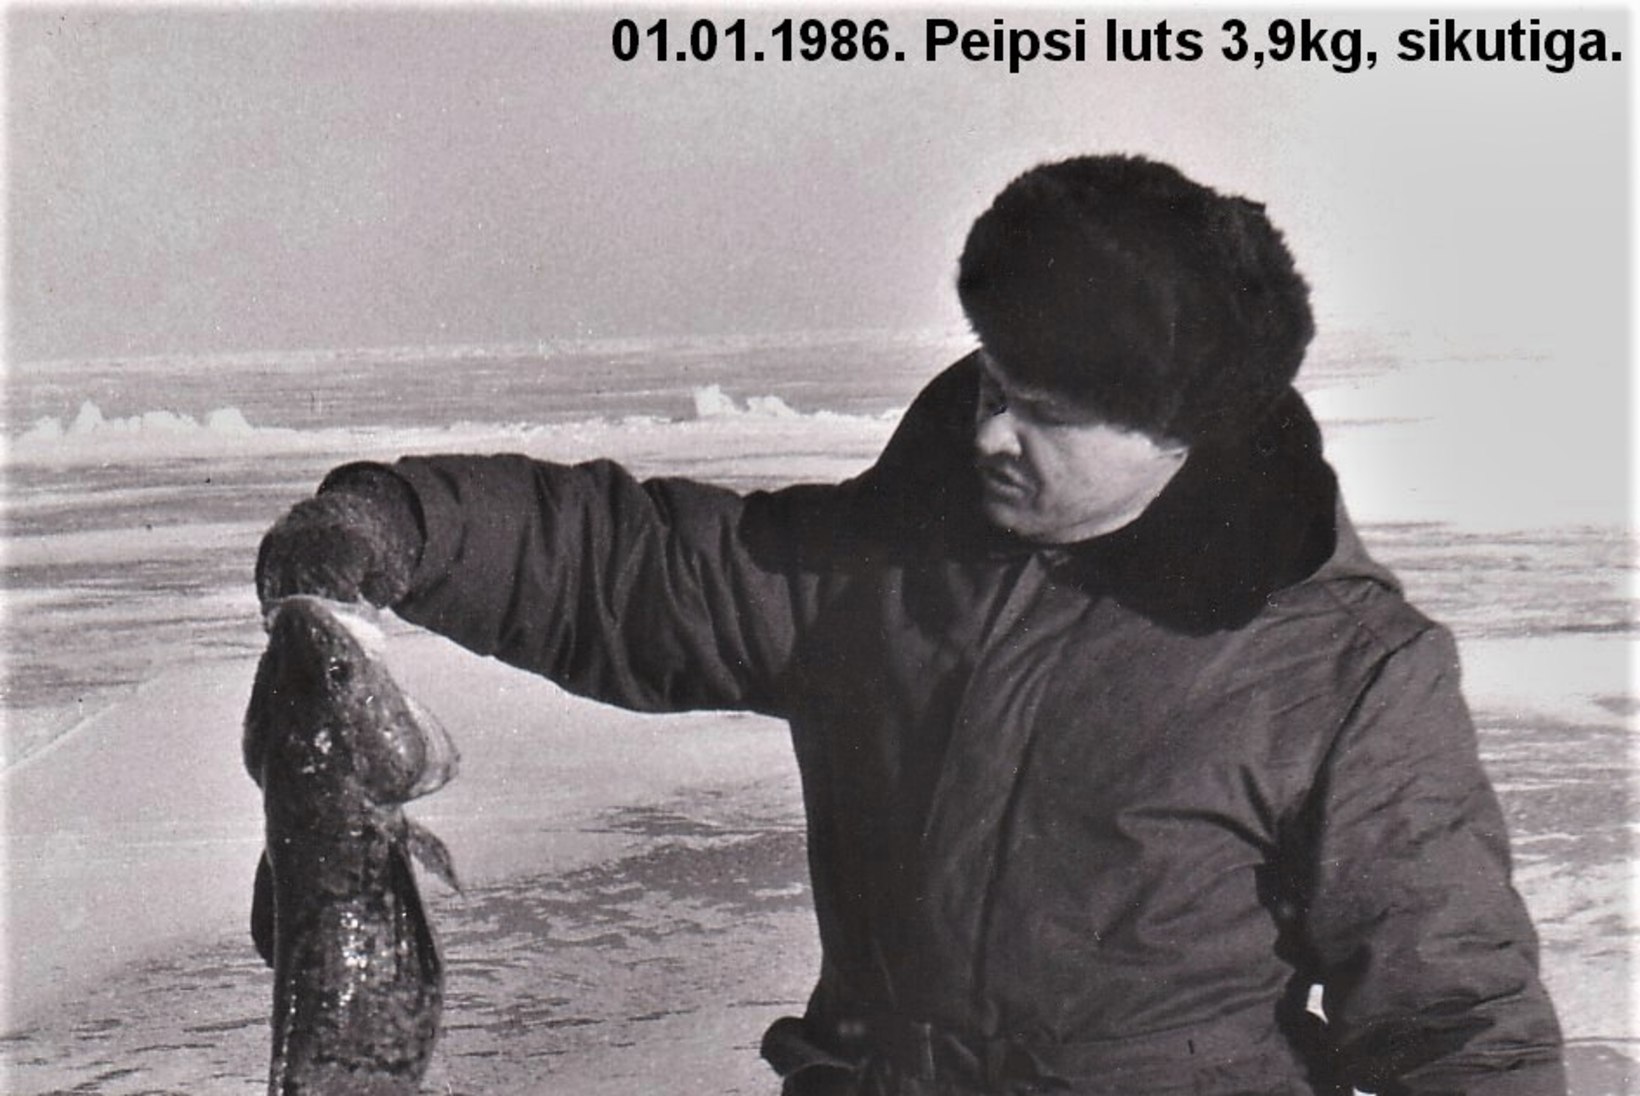 Veterankalamees Katenevi päevikud 1985-1986: tööd palju, kalale enam nii tihti ei pääse